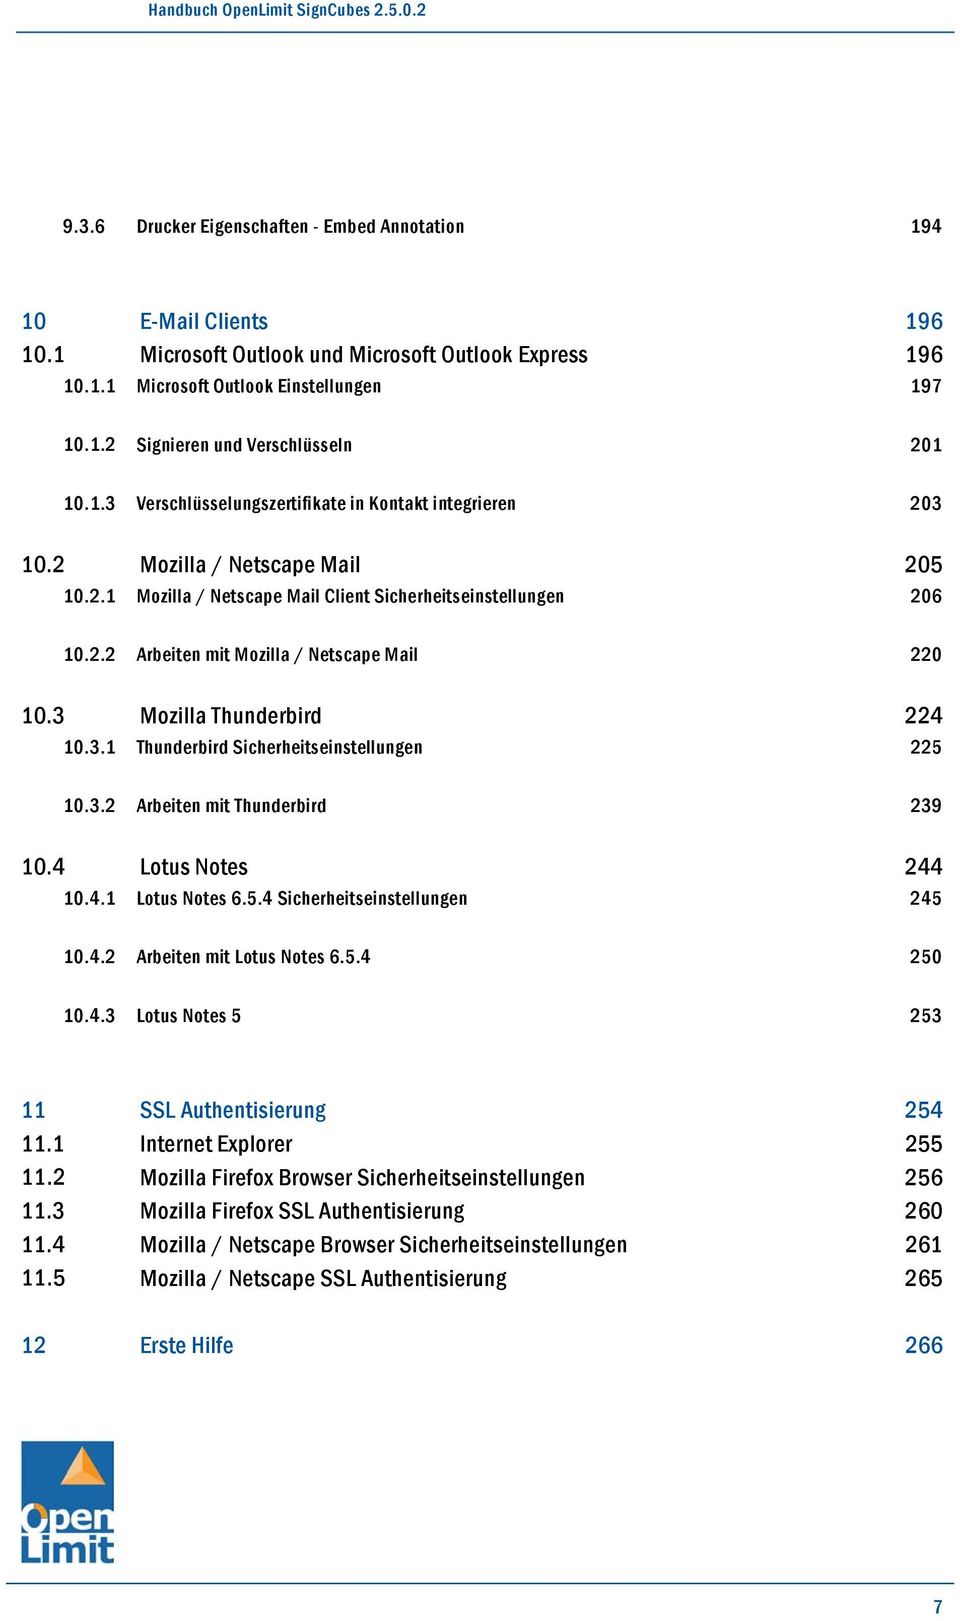 3 Mozilla Thunderbird 10.3.1 Thunderbird Sicherheitseinstellungen 220 224 225 10.3.2 Arbeiten mit Thunderbird 10.4 Lotus Notes 10.4.1 Lotus Notes 6.5.4 Sicherheitseinstellungen 239 244 245 10.4.2 Arbeiten mit Lotus Notes 6.